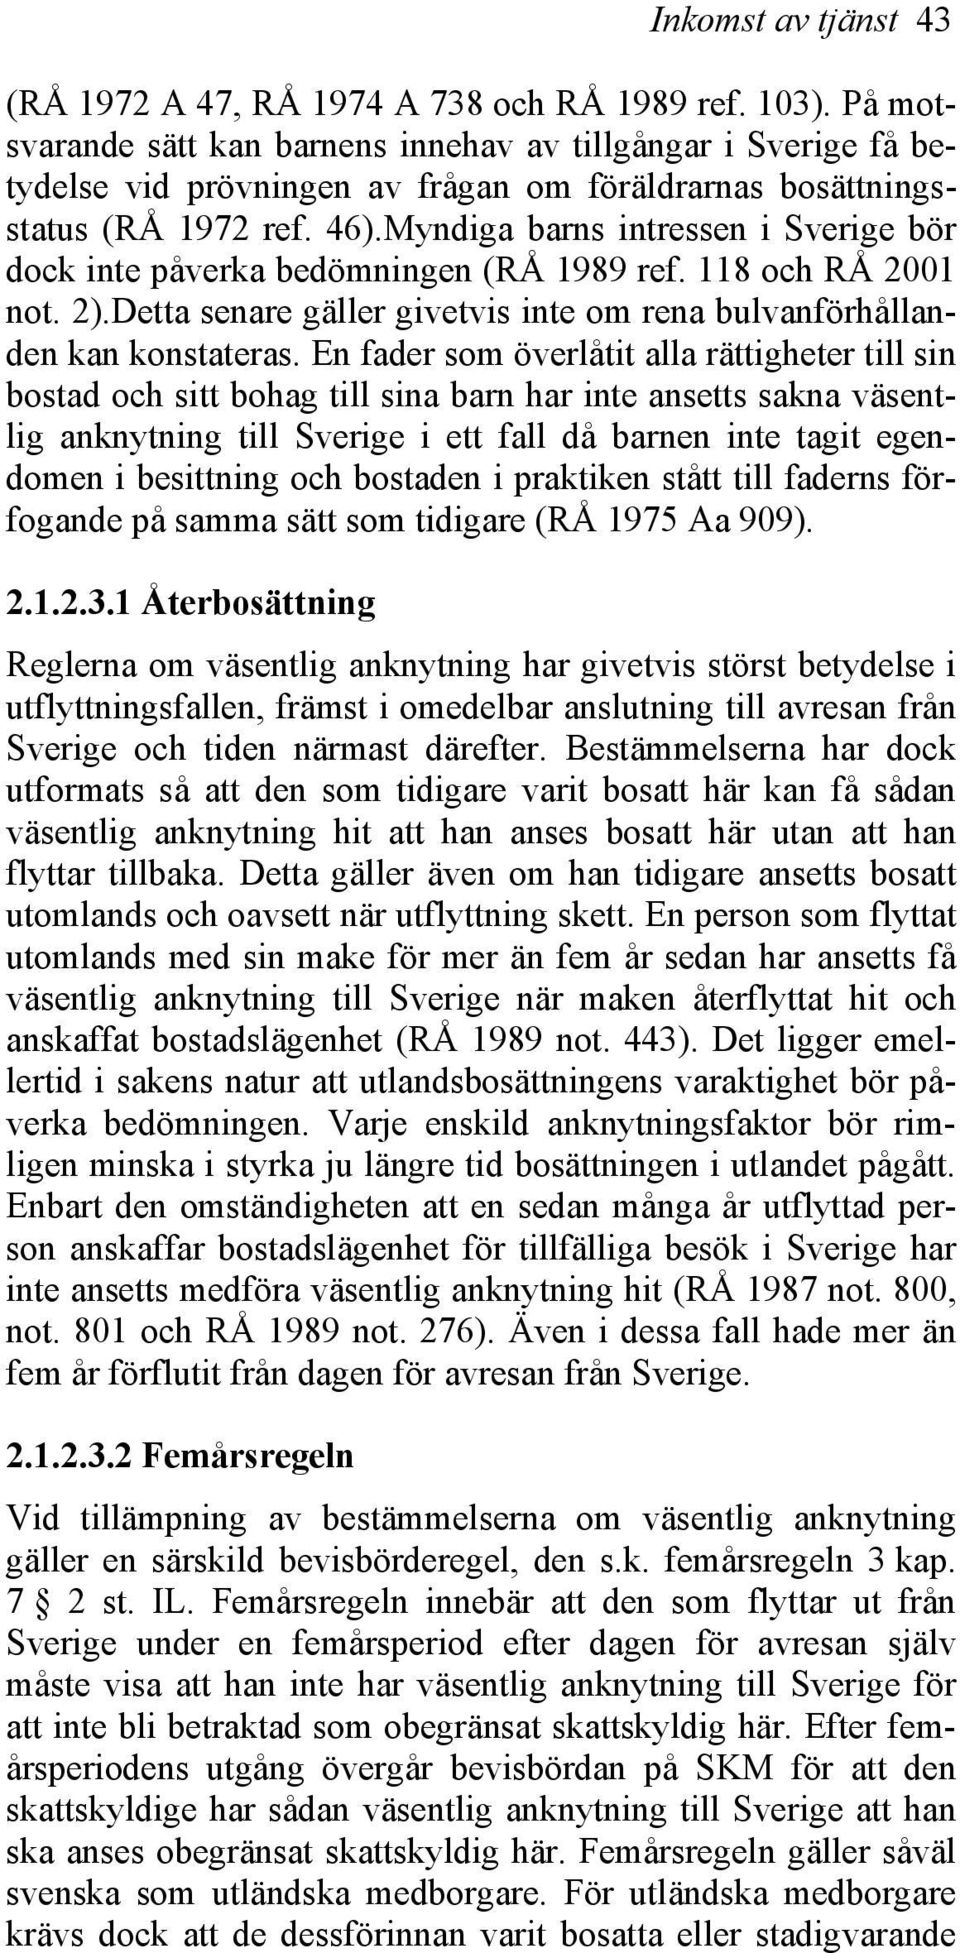 Myndiga barns intressen i Sverige bör dock inte påverka bedömningen (RÅ 1989 ref. 118 och RÅ 2001 not. 2).Detta senare gäller givetvis inte om rena bulvanförhållanden kan konstateras.